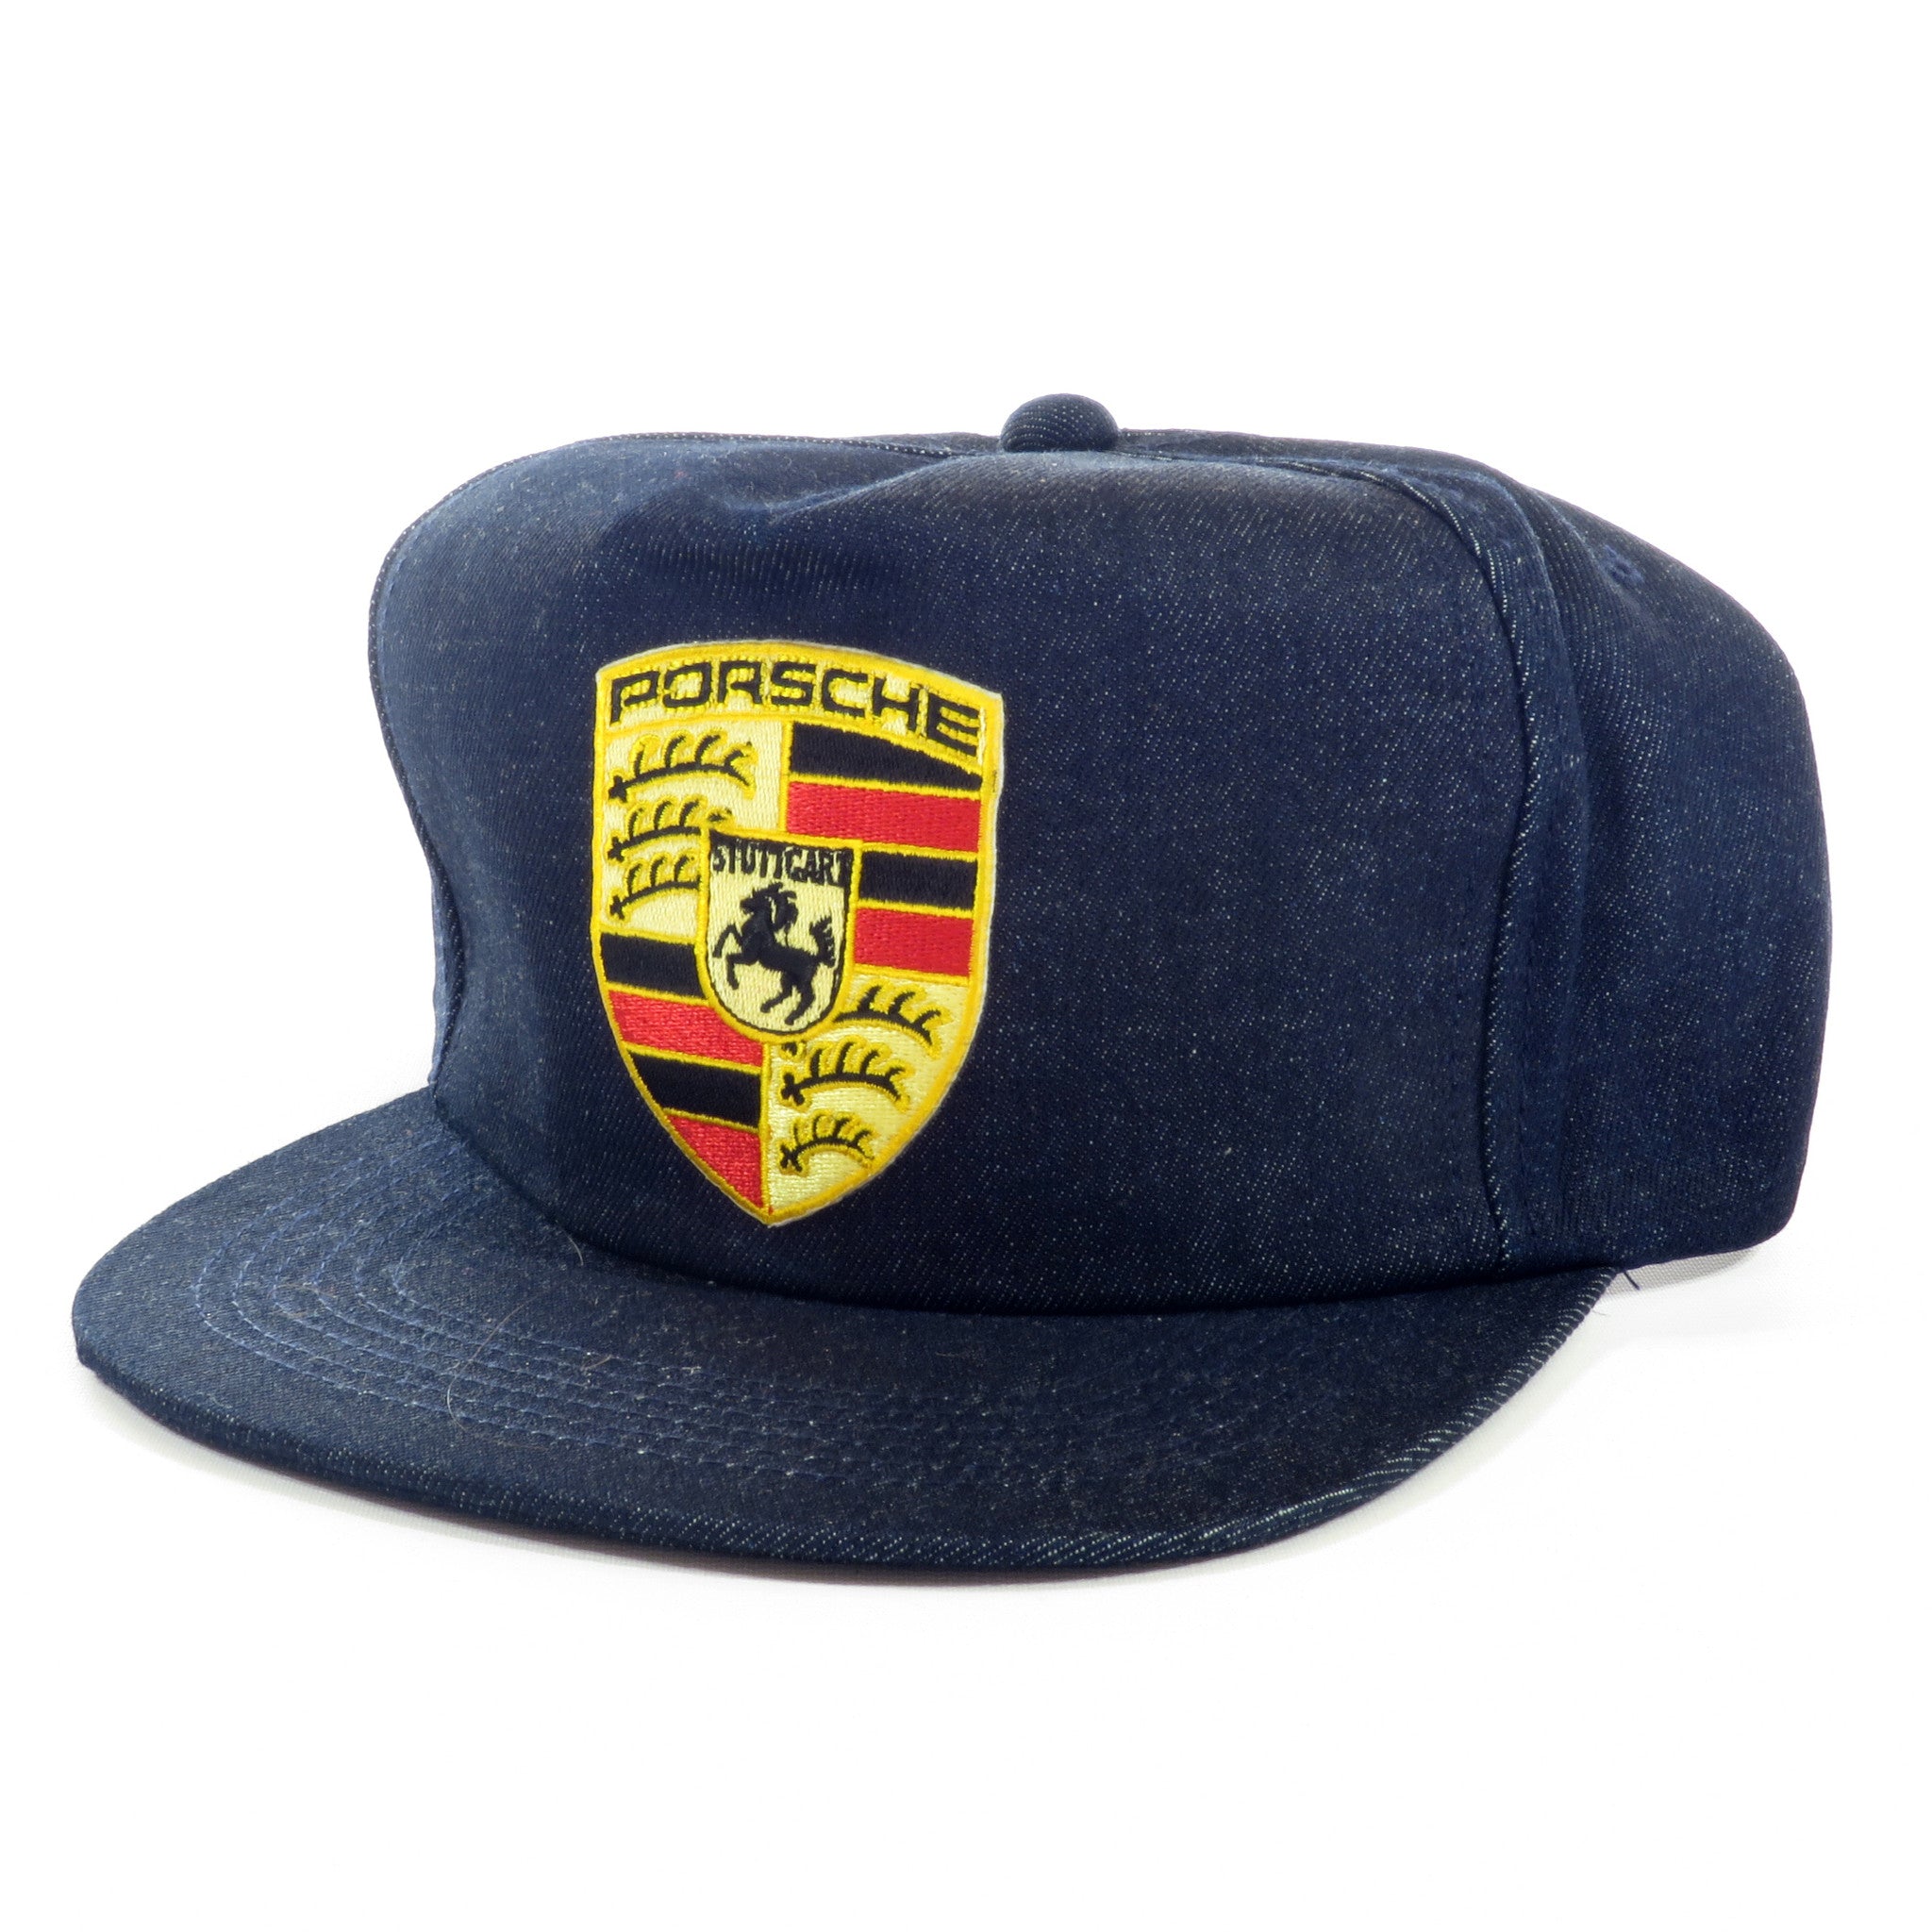 Porsche Raw Denim Snapback Hat